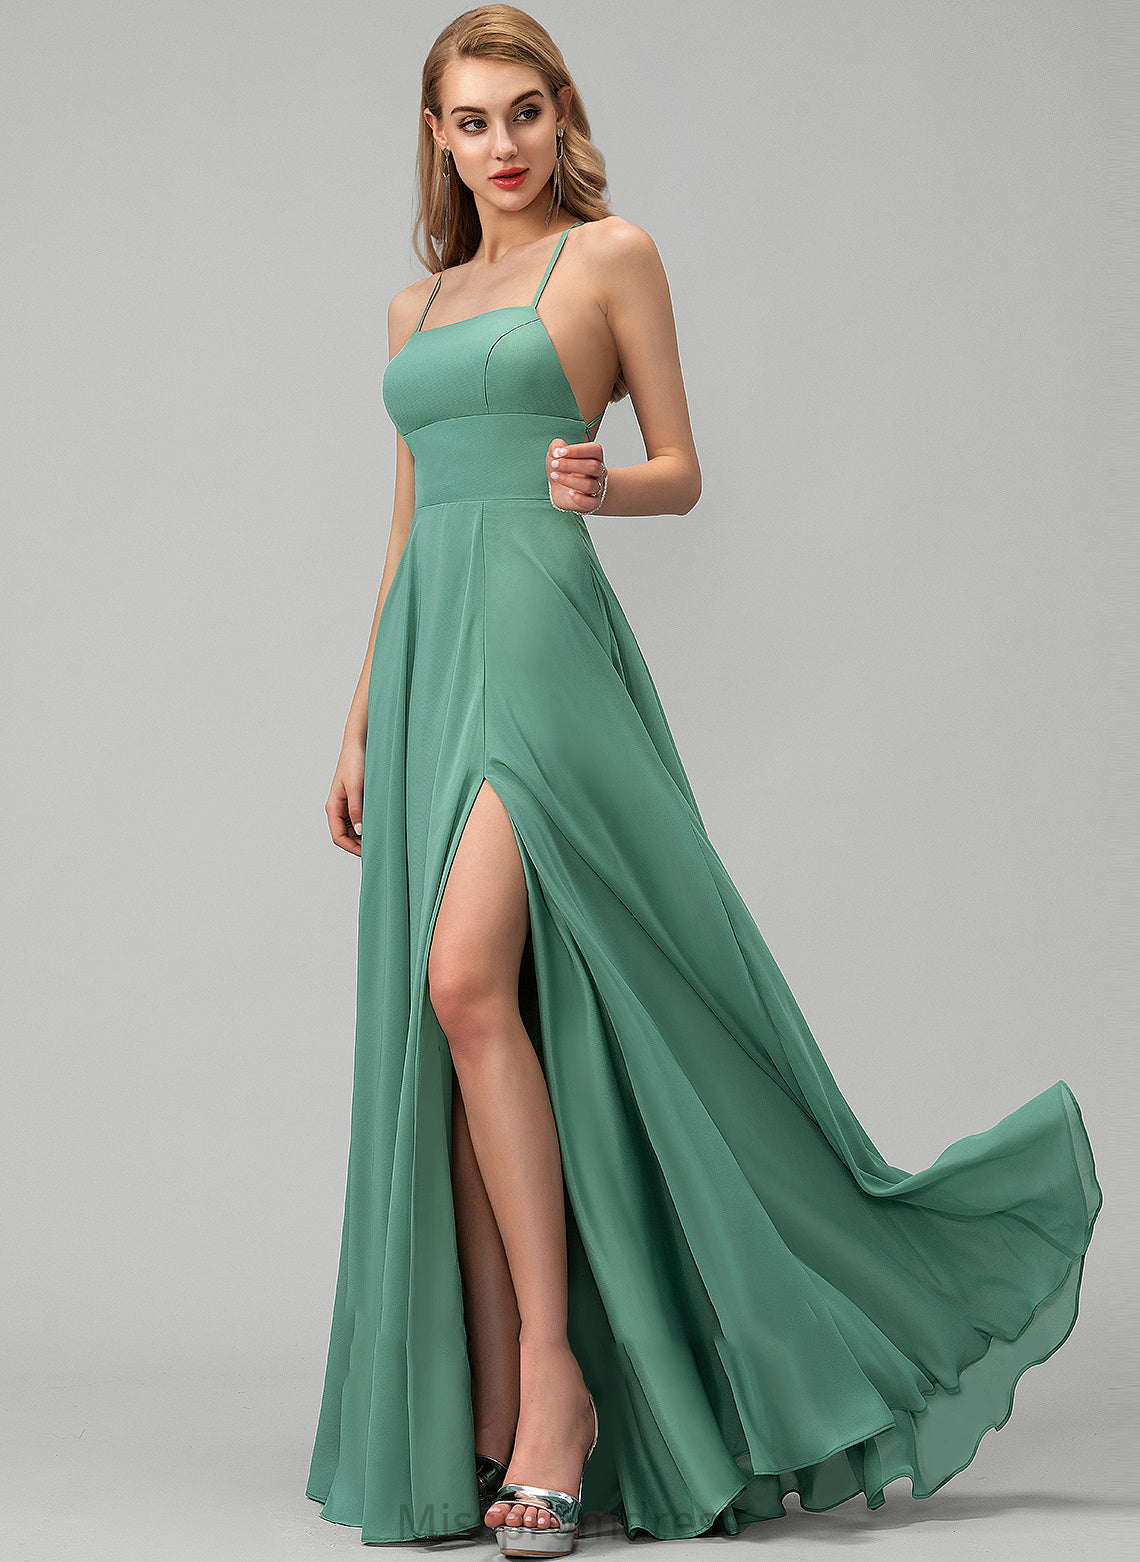 Fabric A-Line Floor-Length Silhouette Length Straps SquareNeckline Neckline Angel Knee Length V-Neck Short Sleeves Bridesmaid Dresses